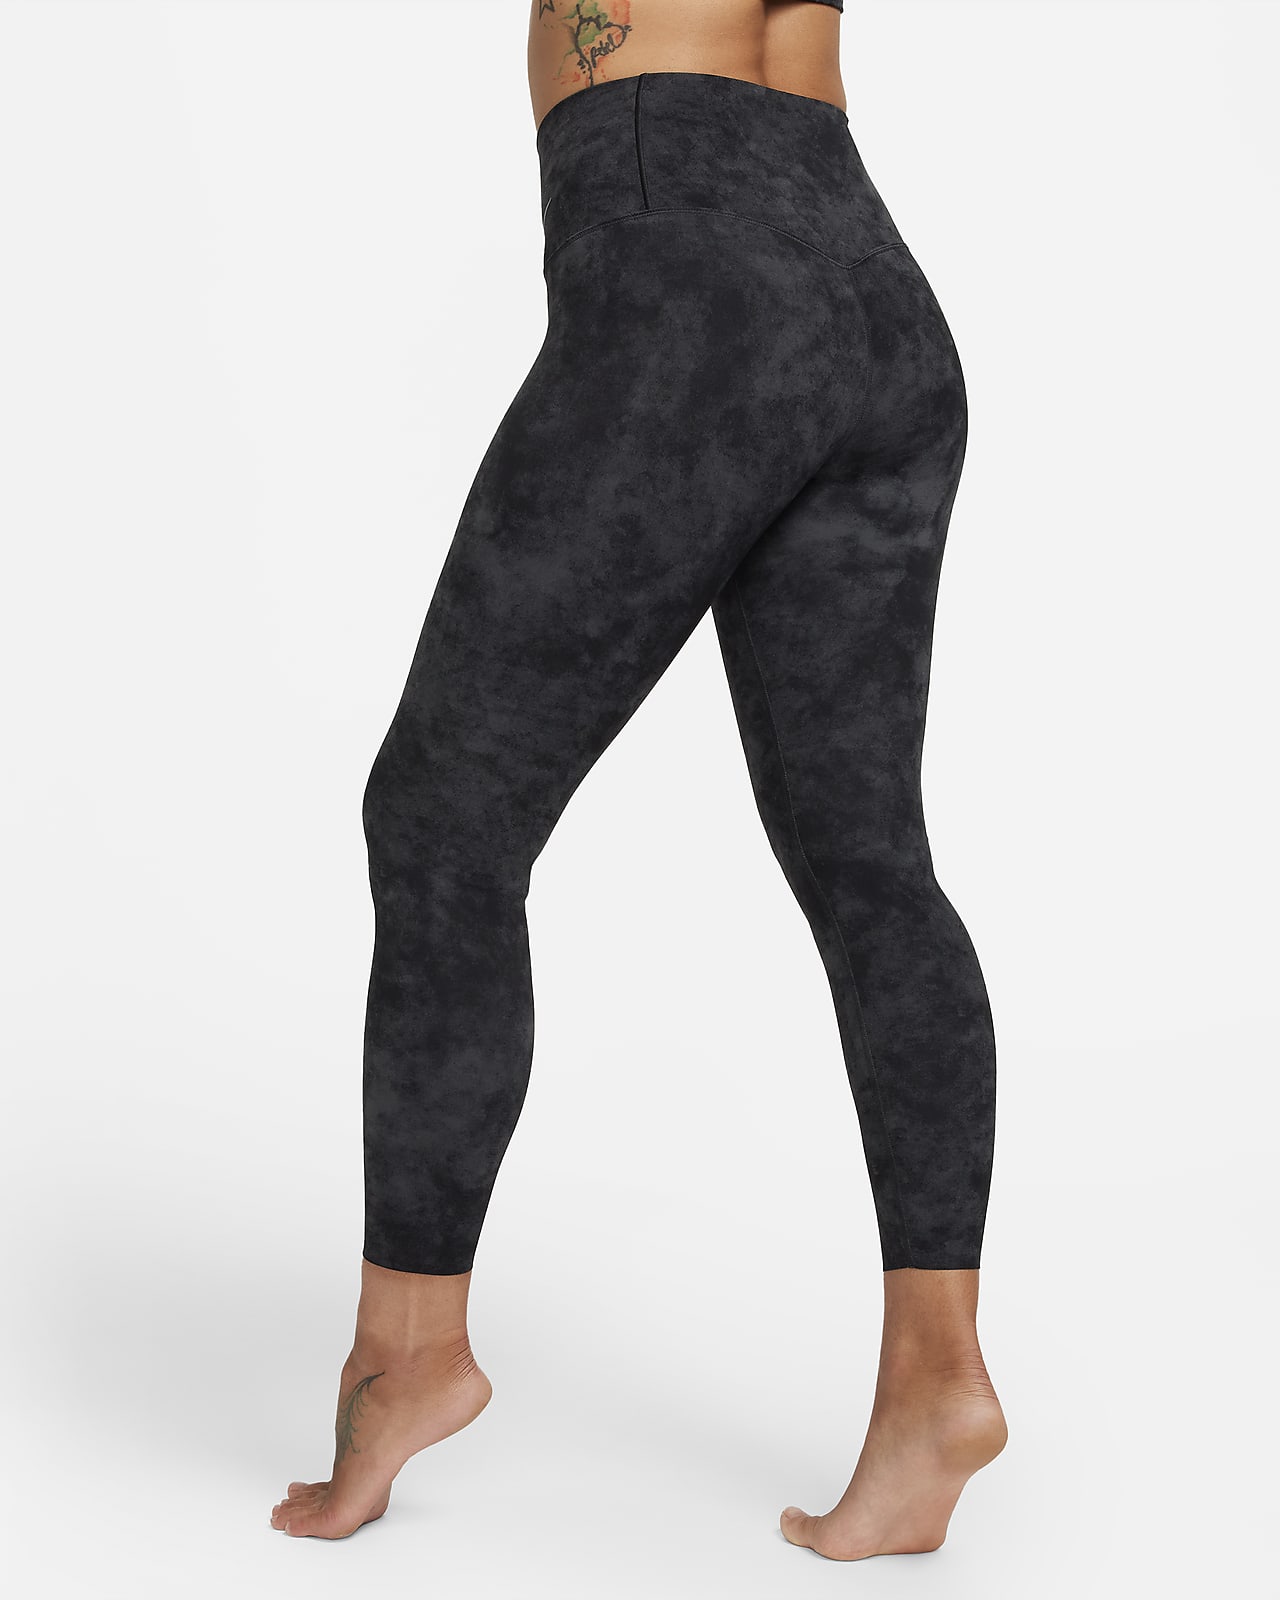 Nike Zenvy Tie-Dye Women's Gentle-Support High-Waisted 7/8 Leggings (Plus  Size). Nike CA